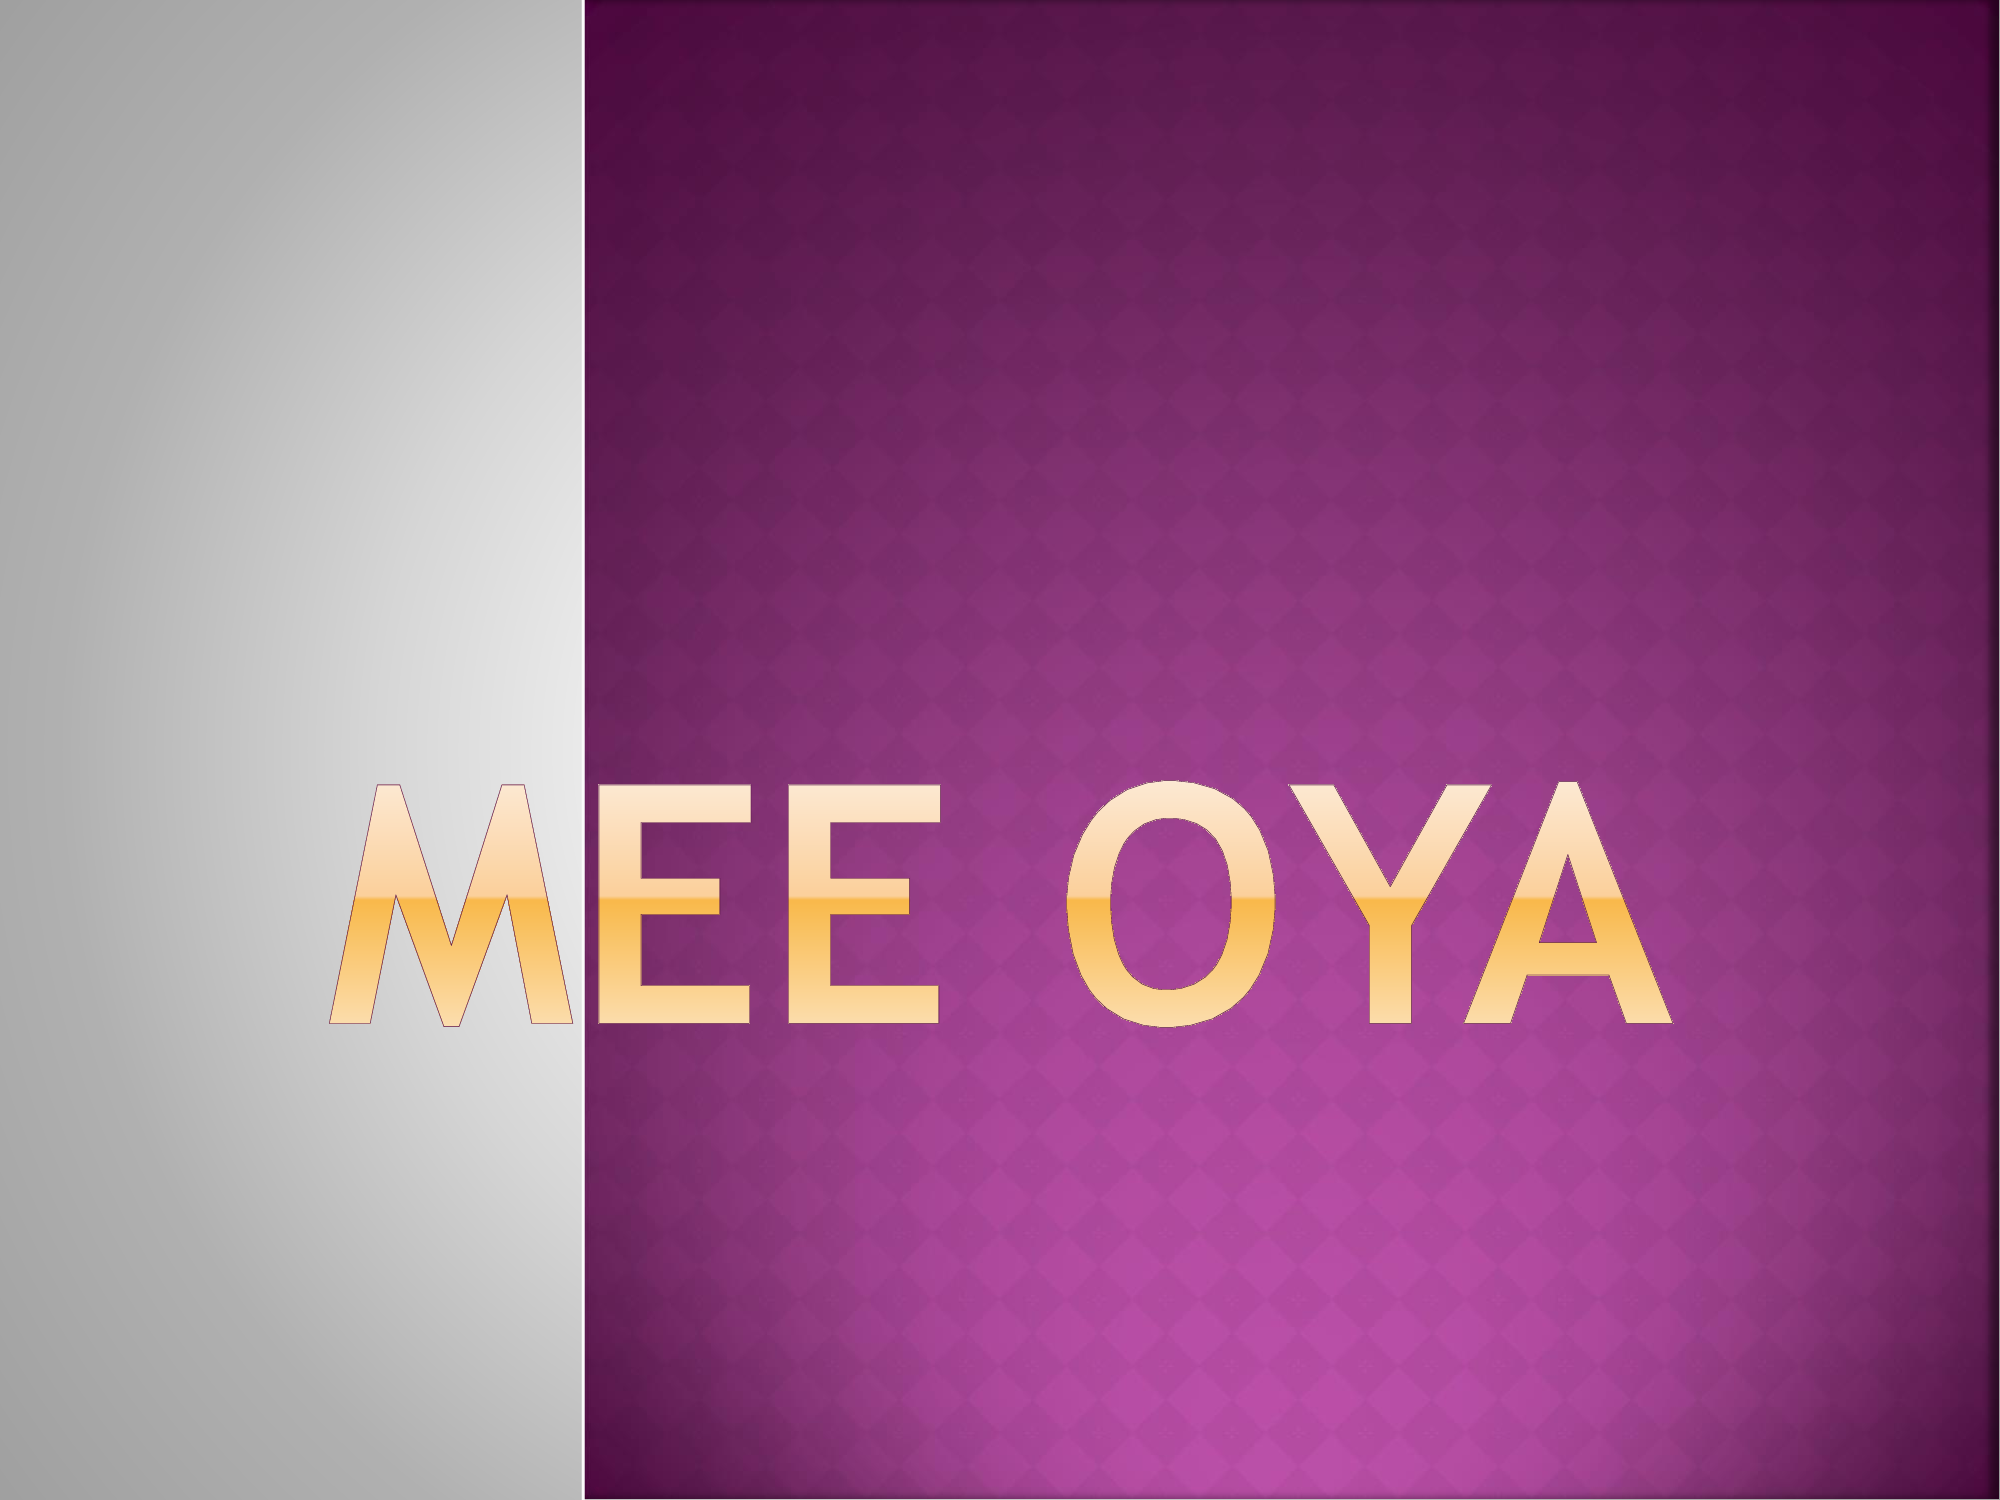 Mee oya